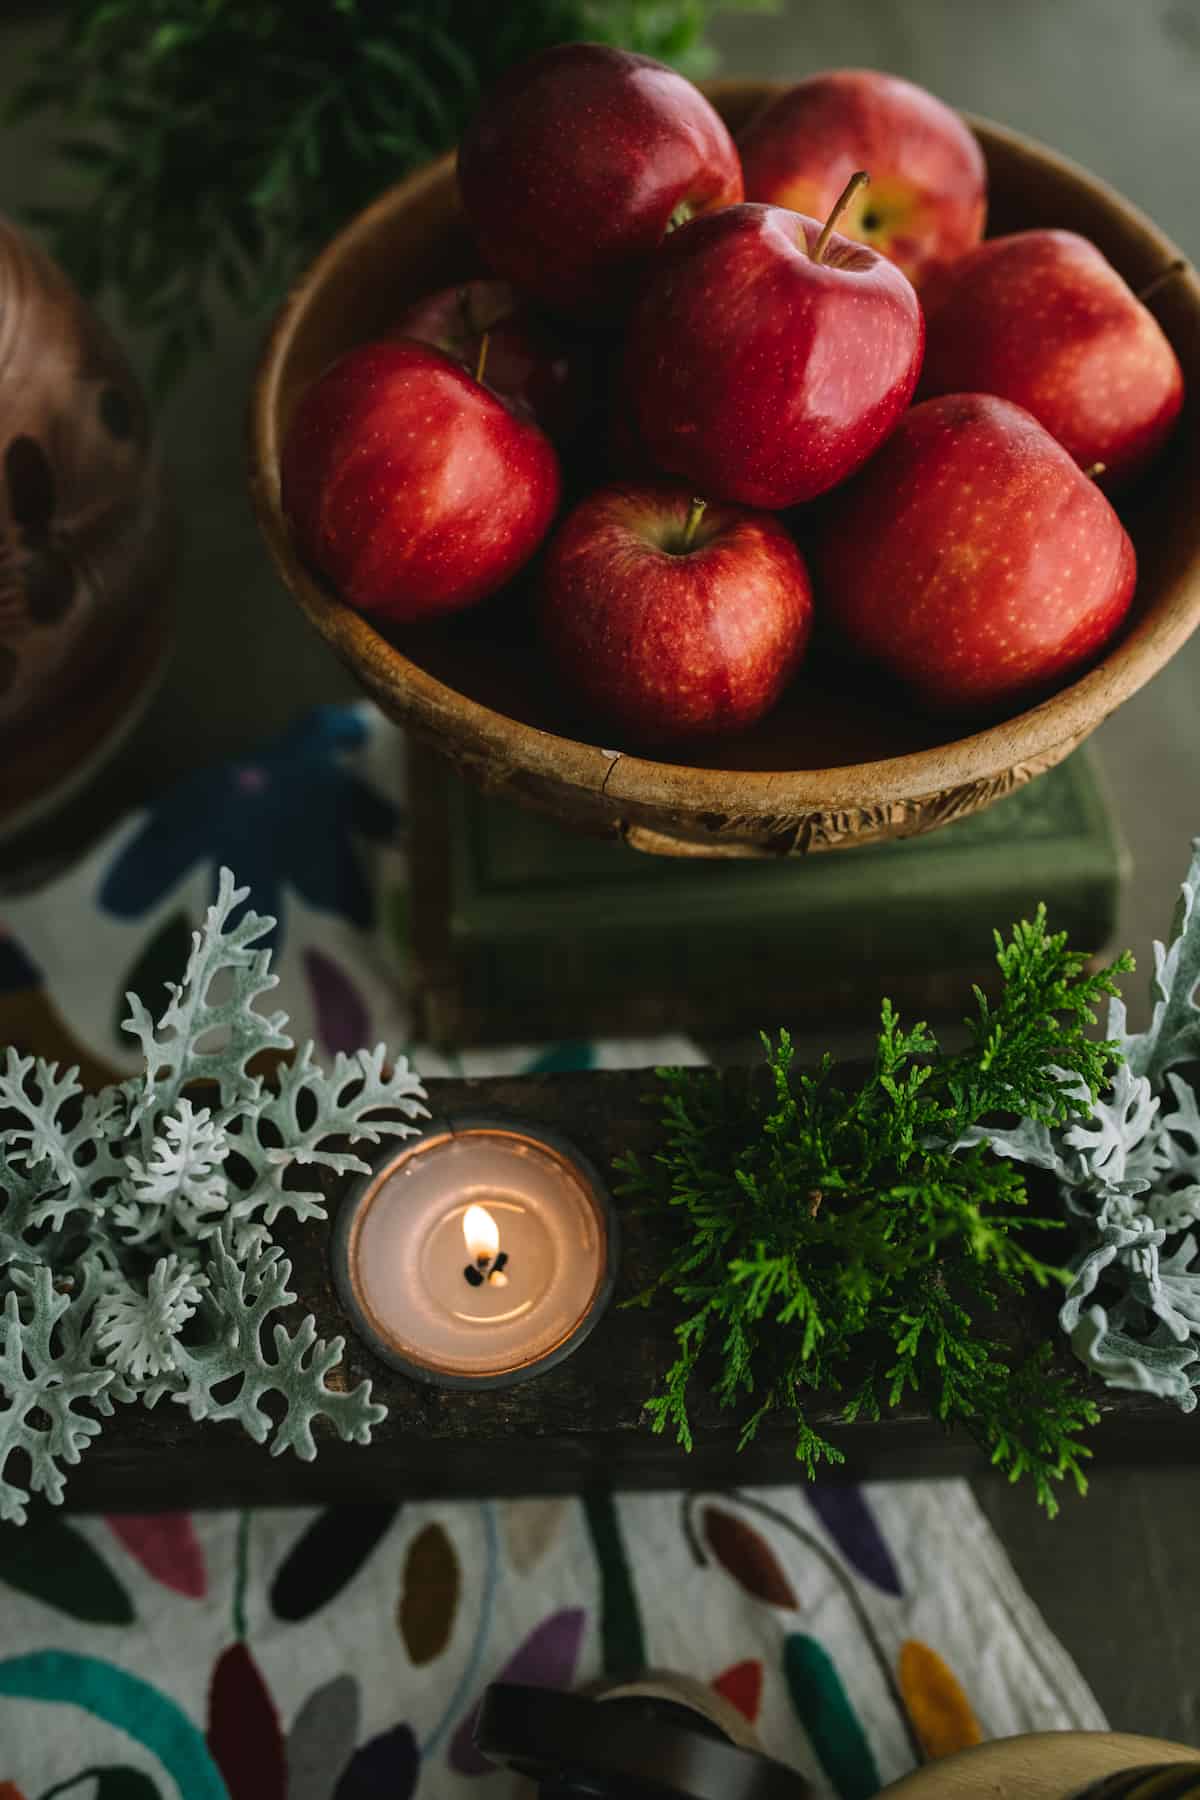 manzanas rojas en un cuenco de madera tallada junto a la vegetación invernal y una vela.